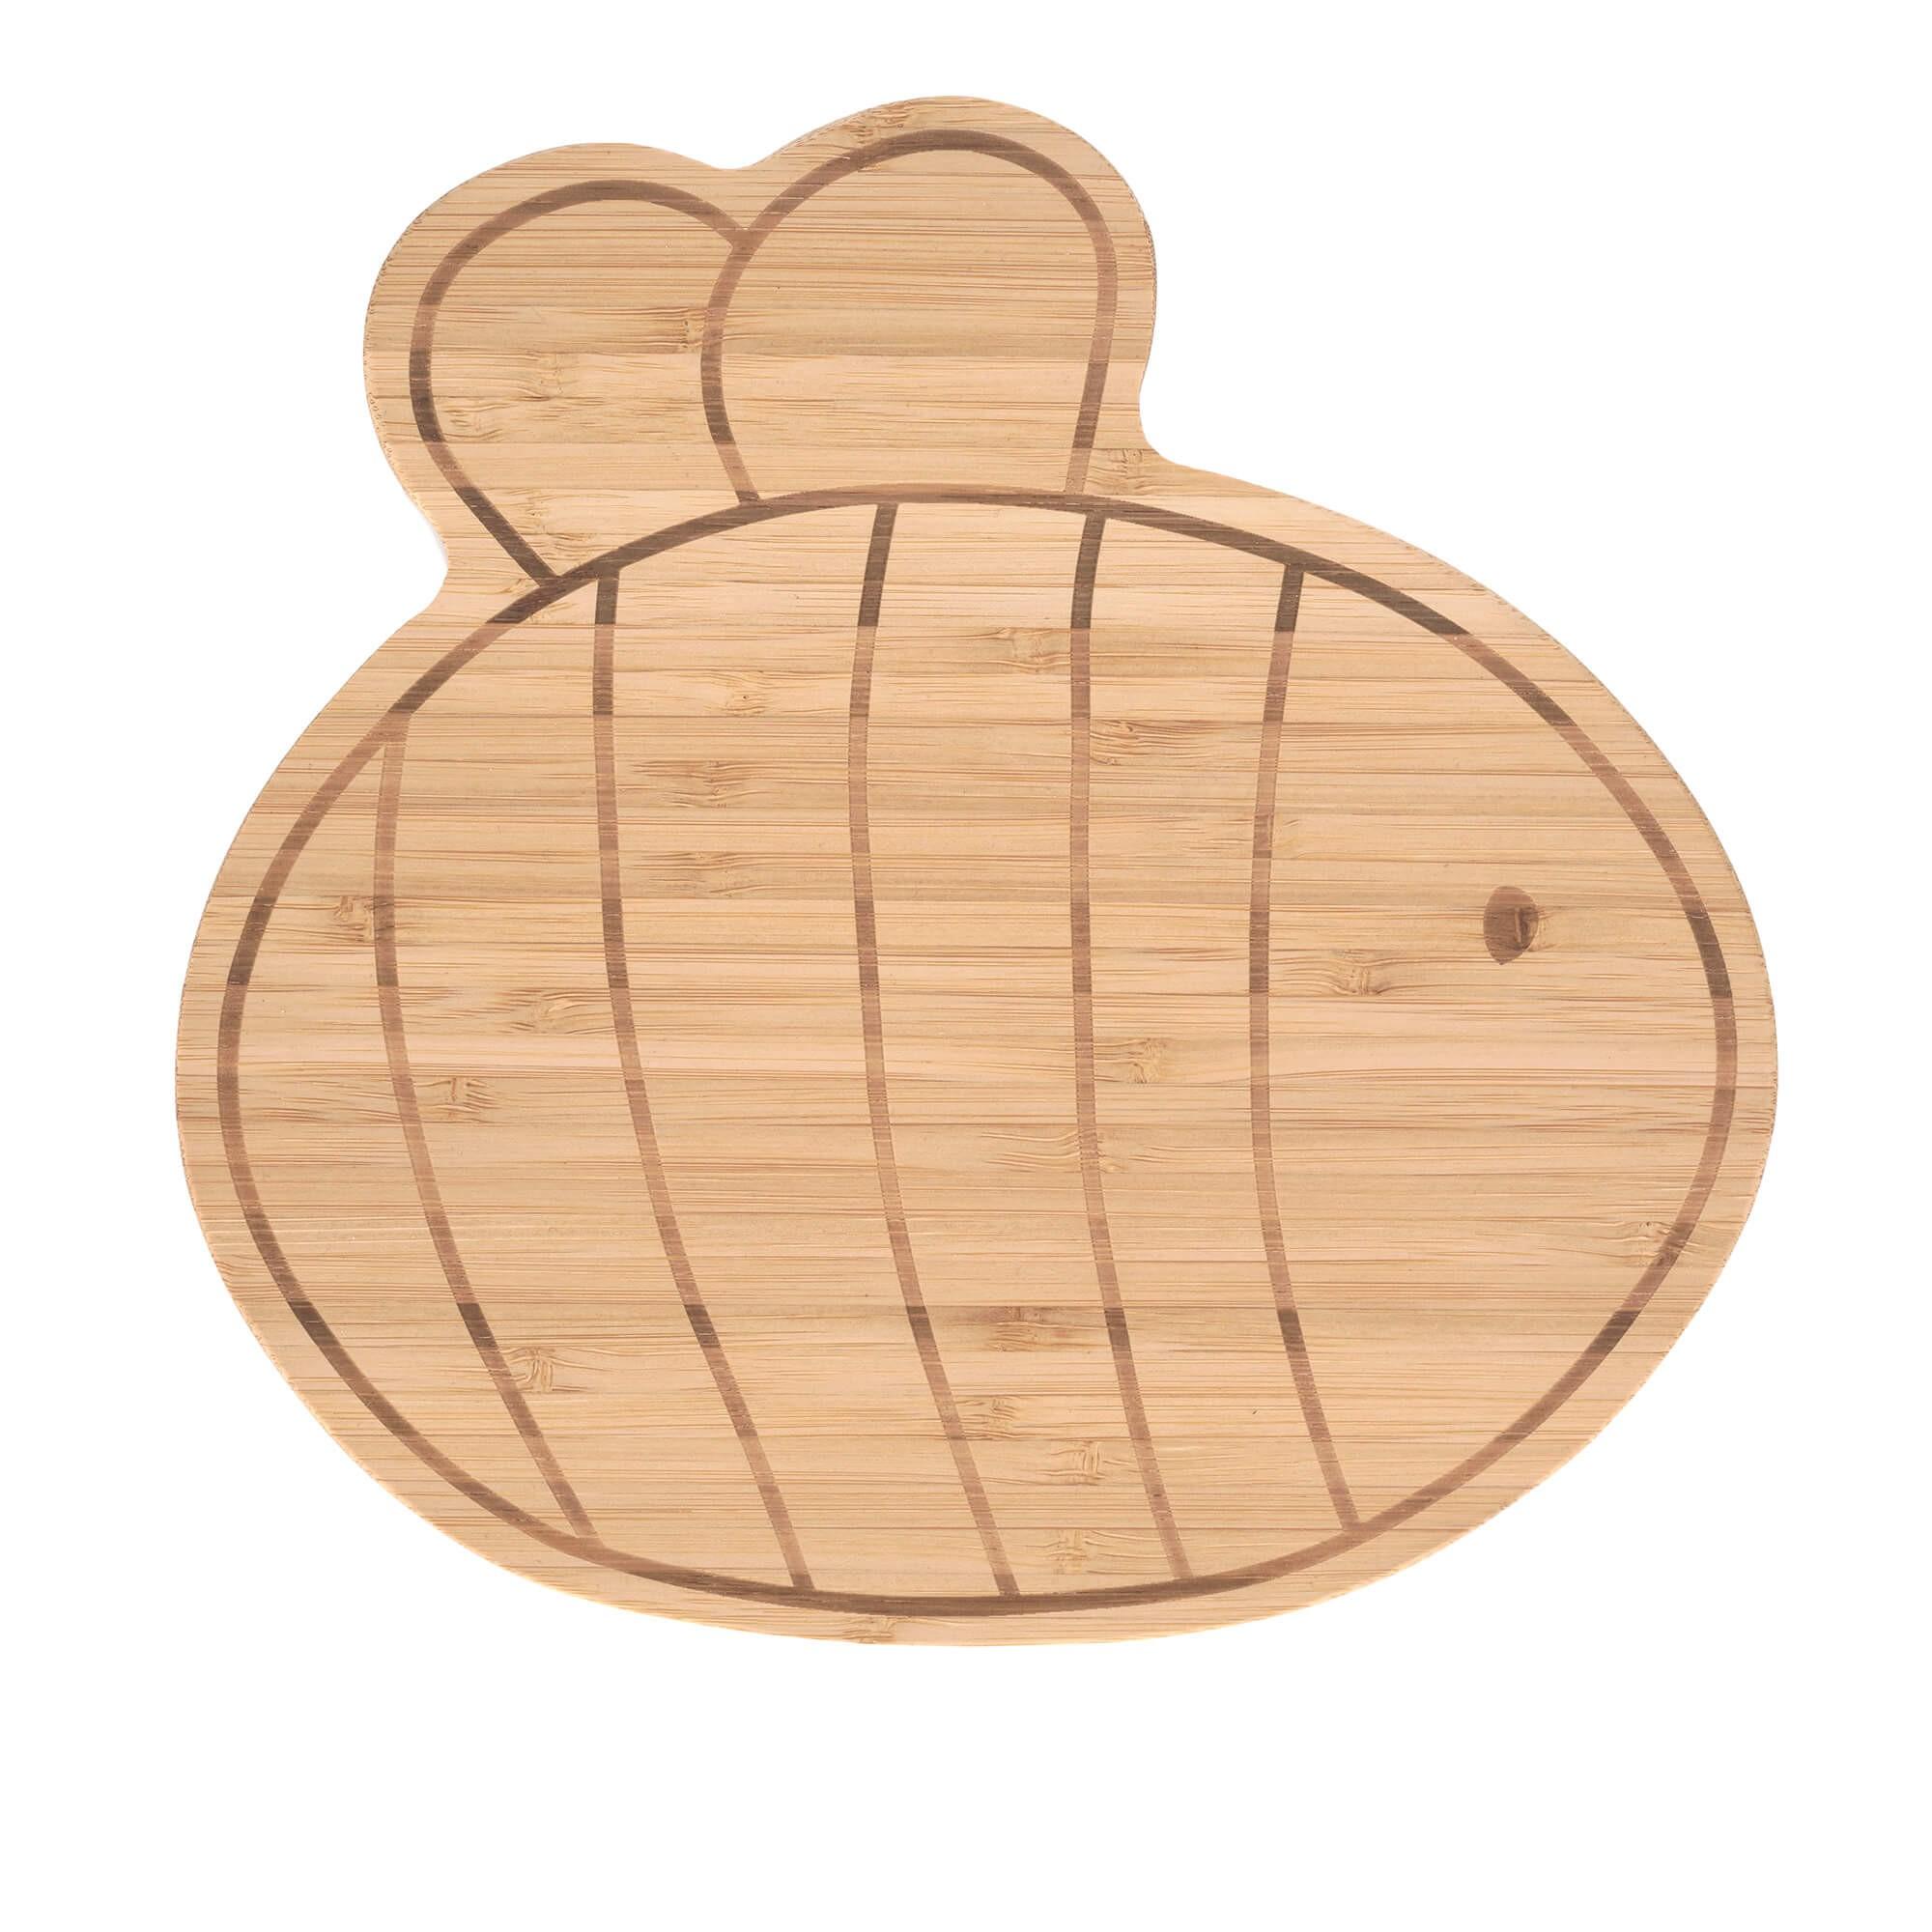 Lassig - Breakfast board bamboo/wood garden explorer bee